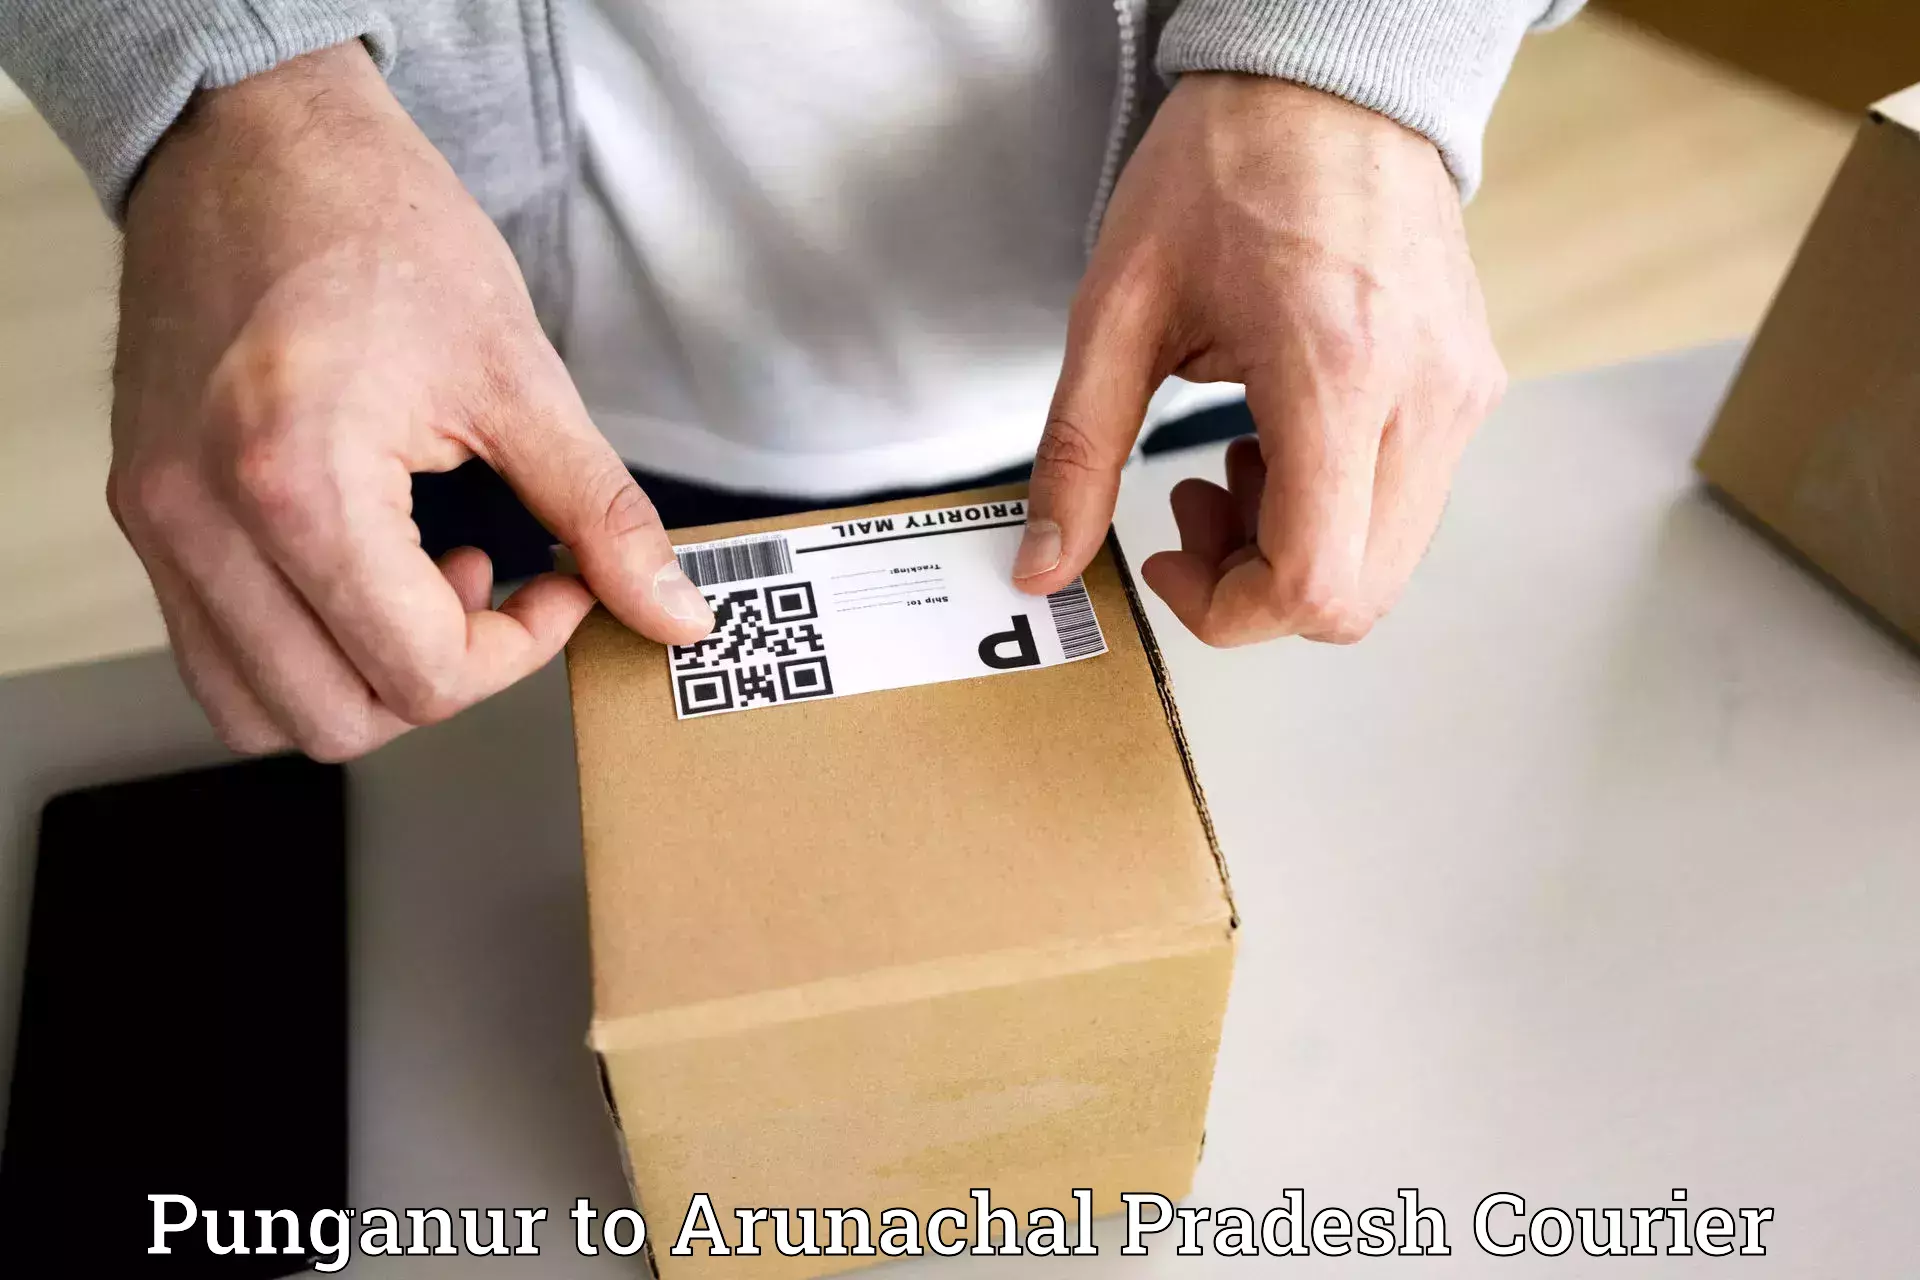 Seamless shipping experience Punganur to Arunachal Pradesh